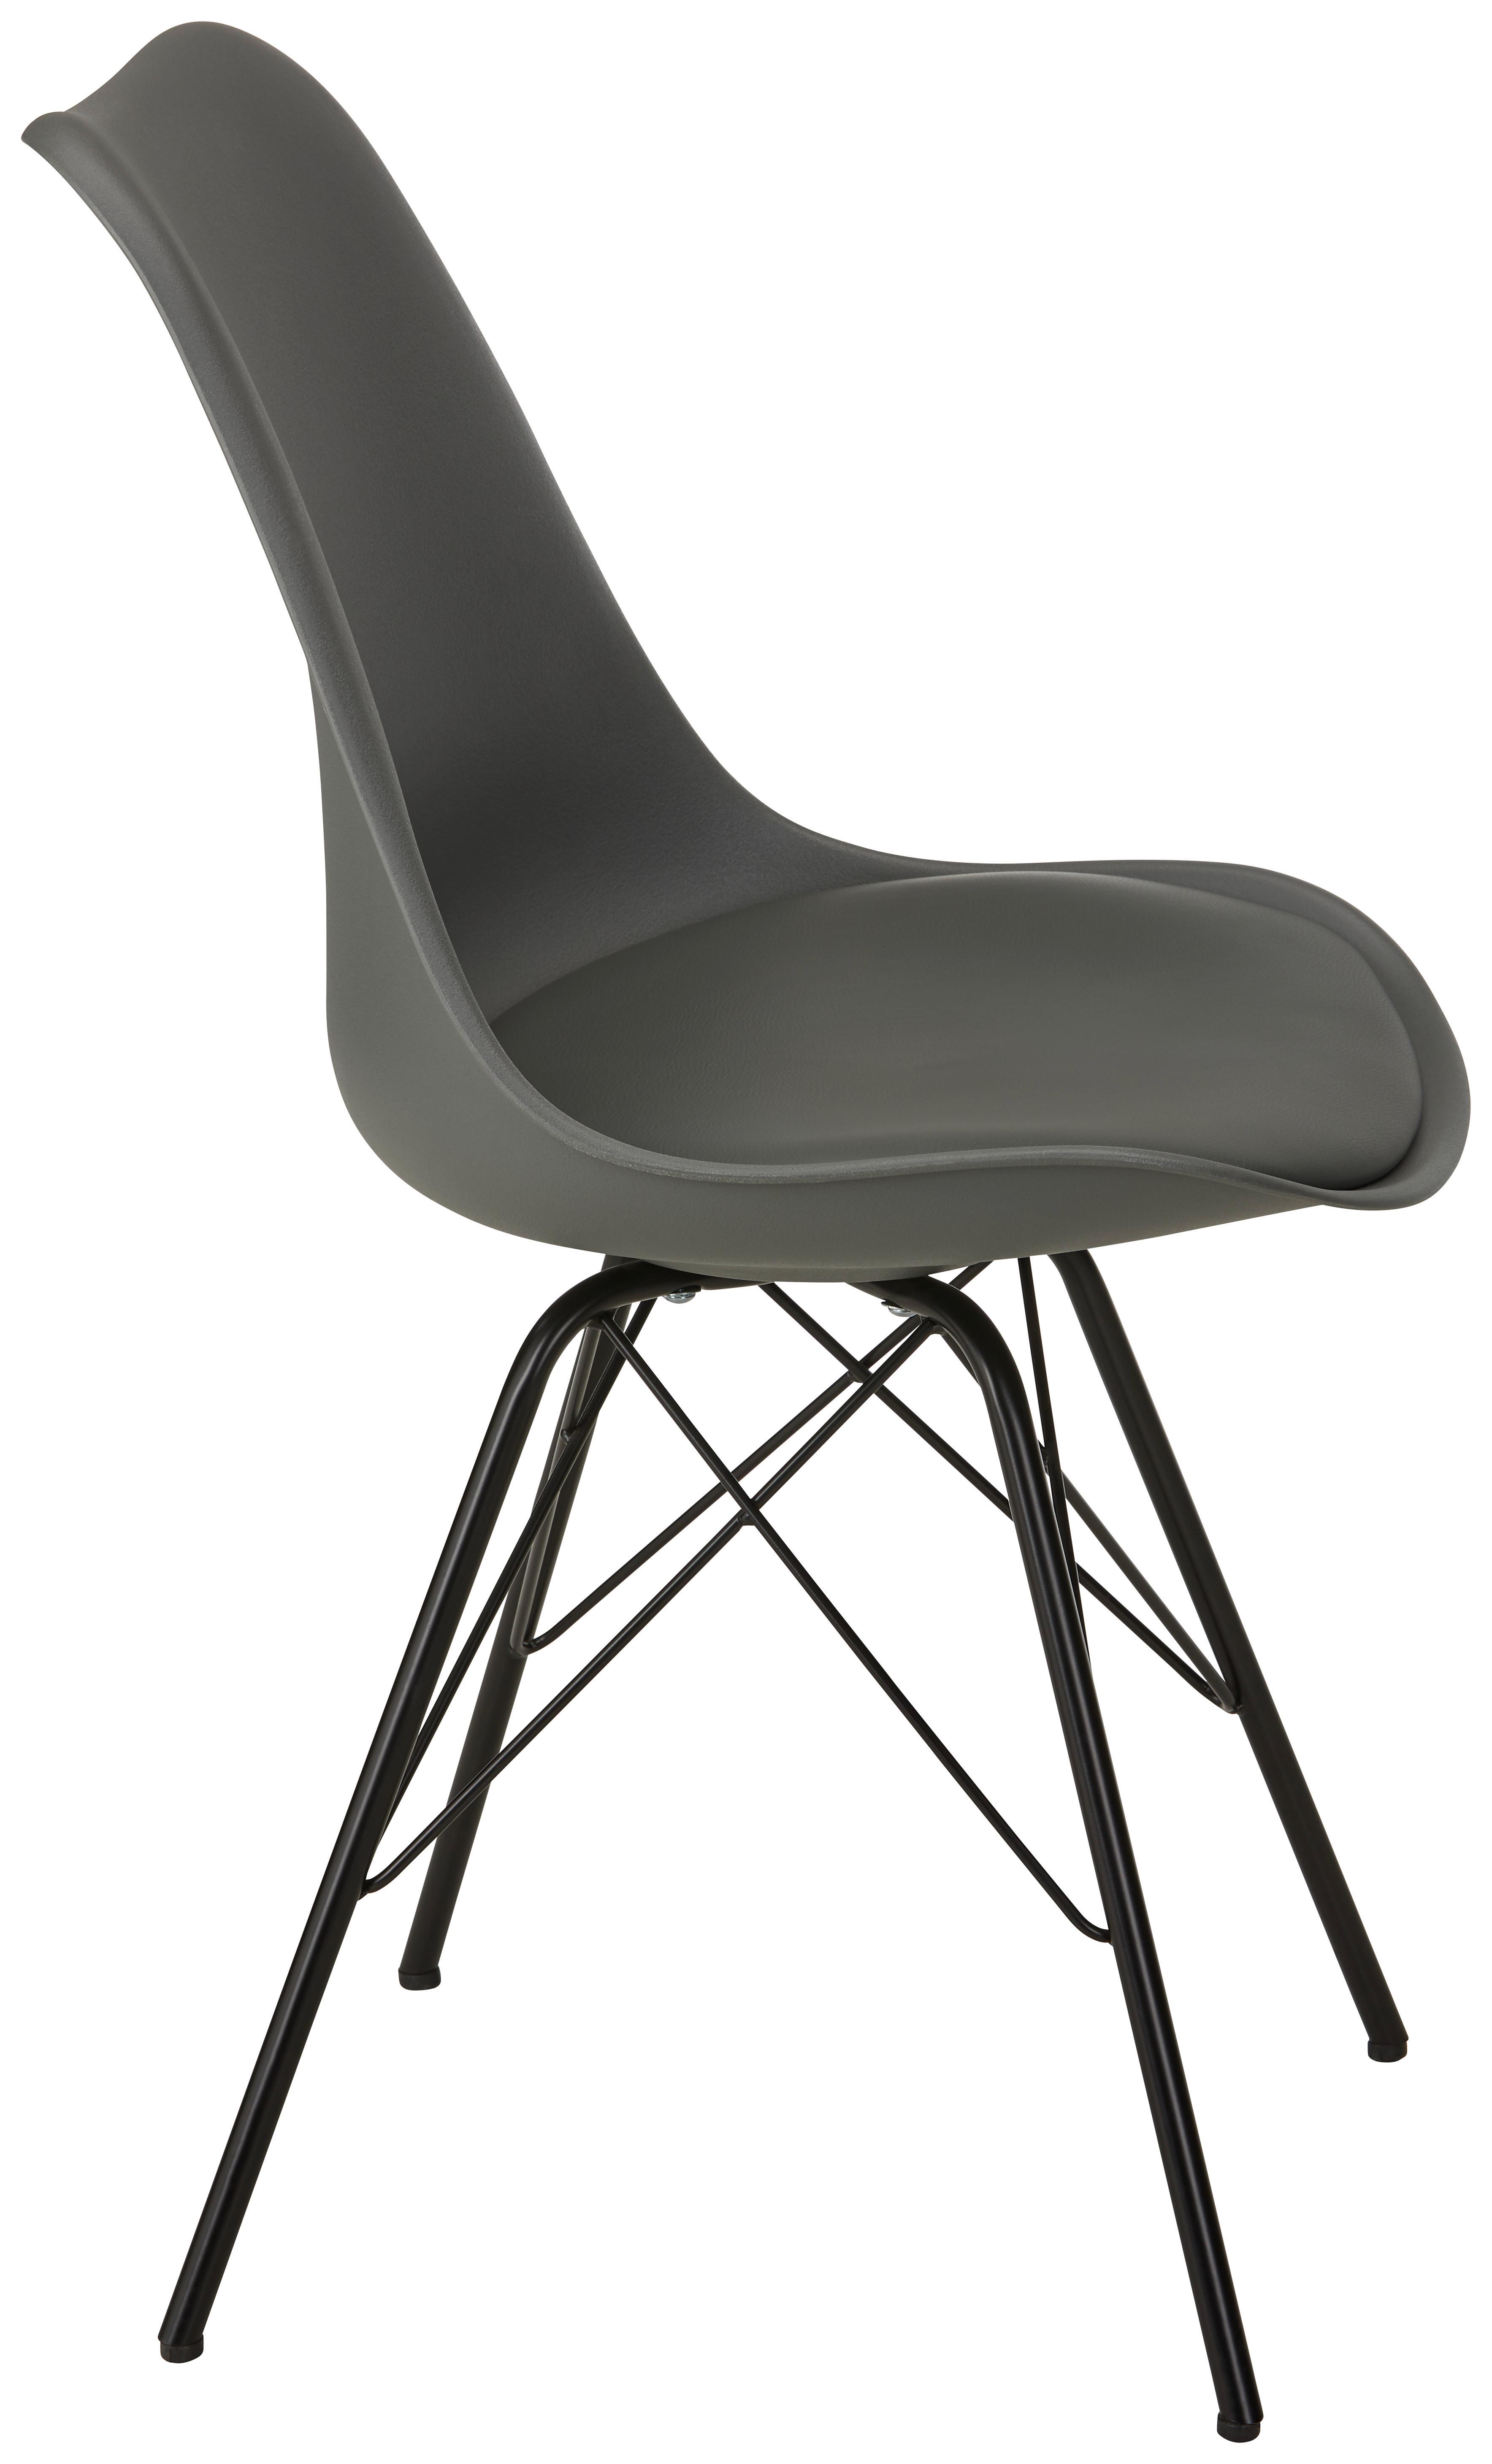 Stuhl in Grau - Schwarz/Grau, MODERN, Kunststoff/Textil (55,5/86/48cm) - Based